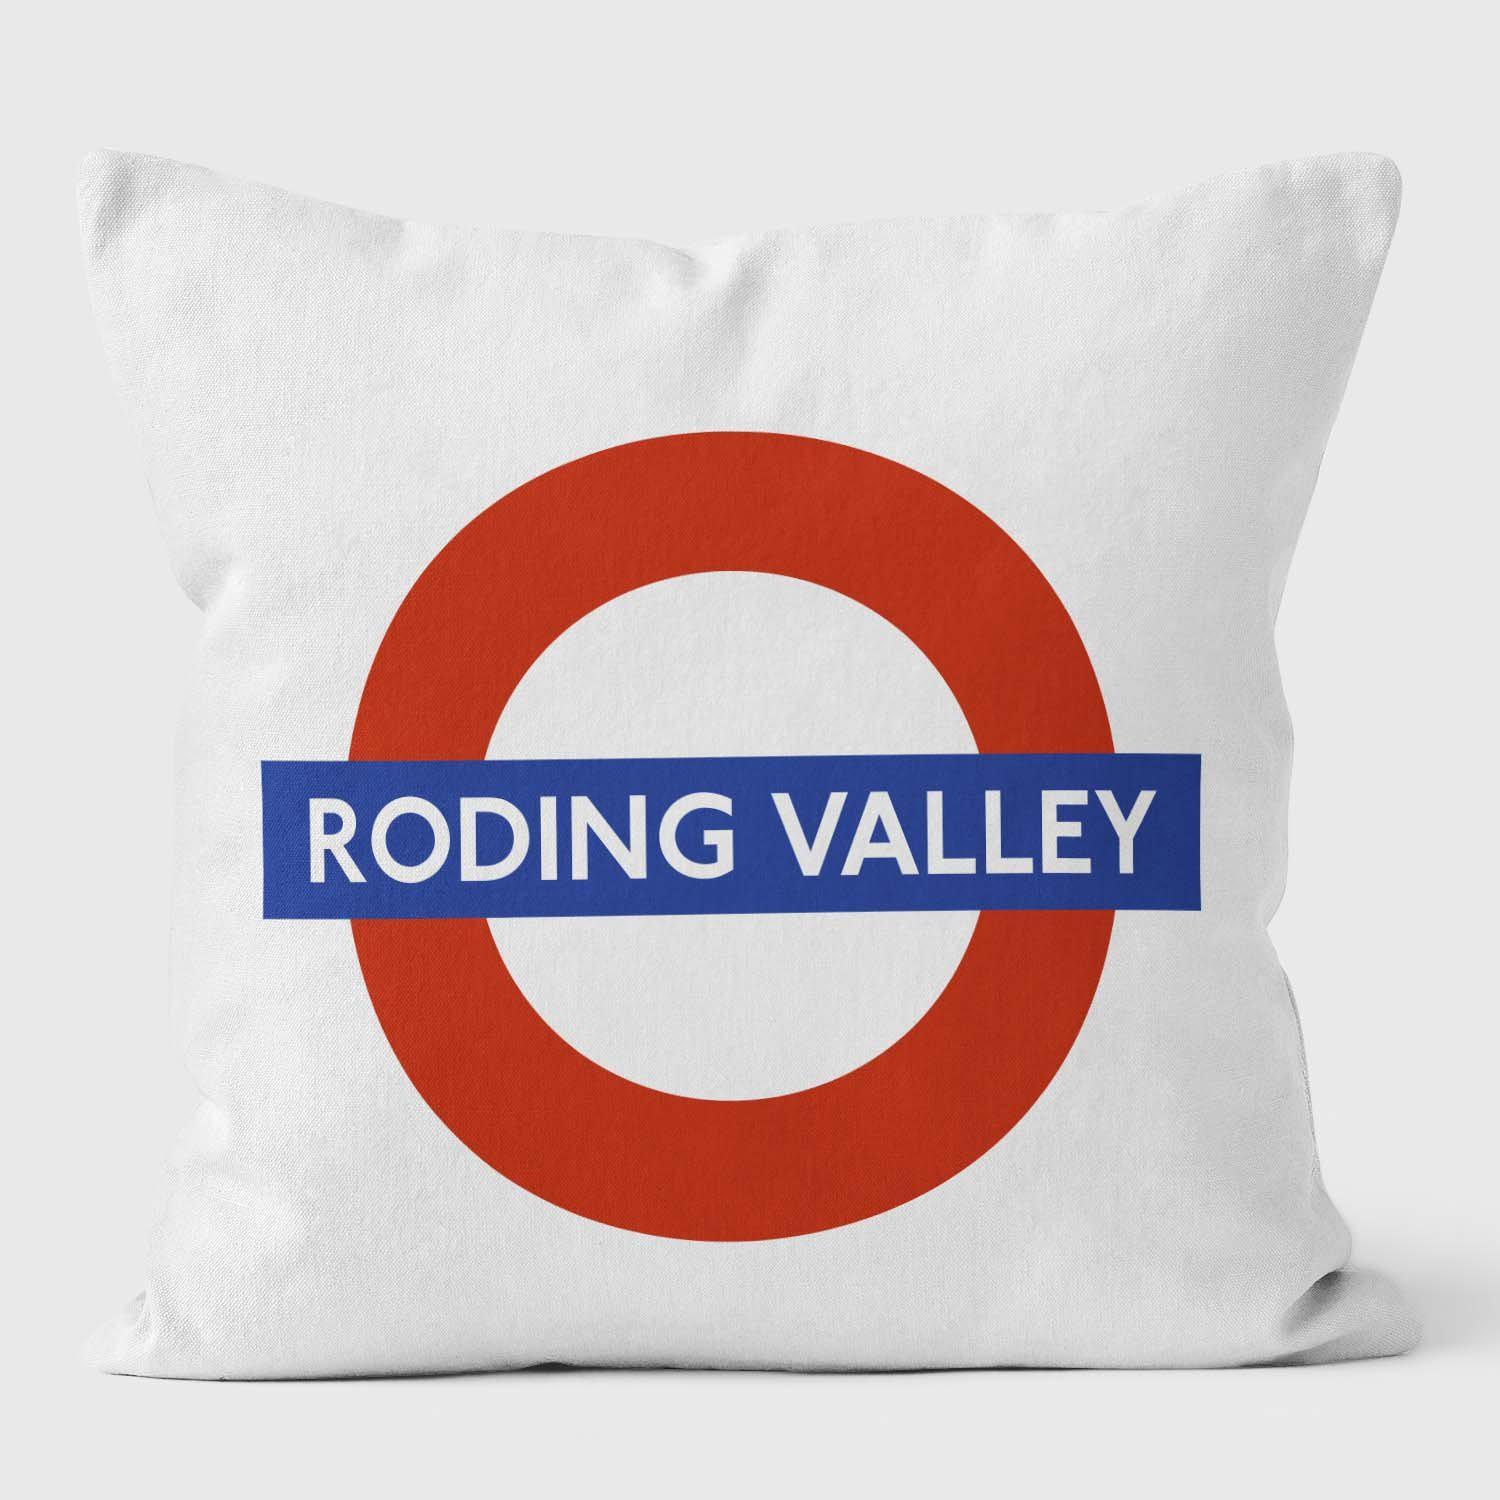 Roding Valley London Underground Tube Station Roundel Cushion - Handmade Cushions UK - WeLoveCushions